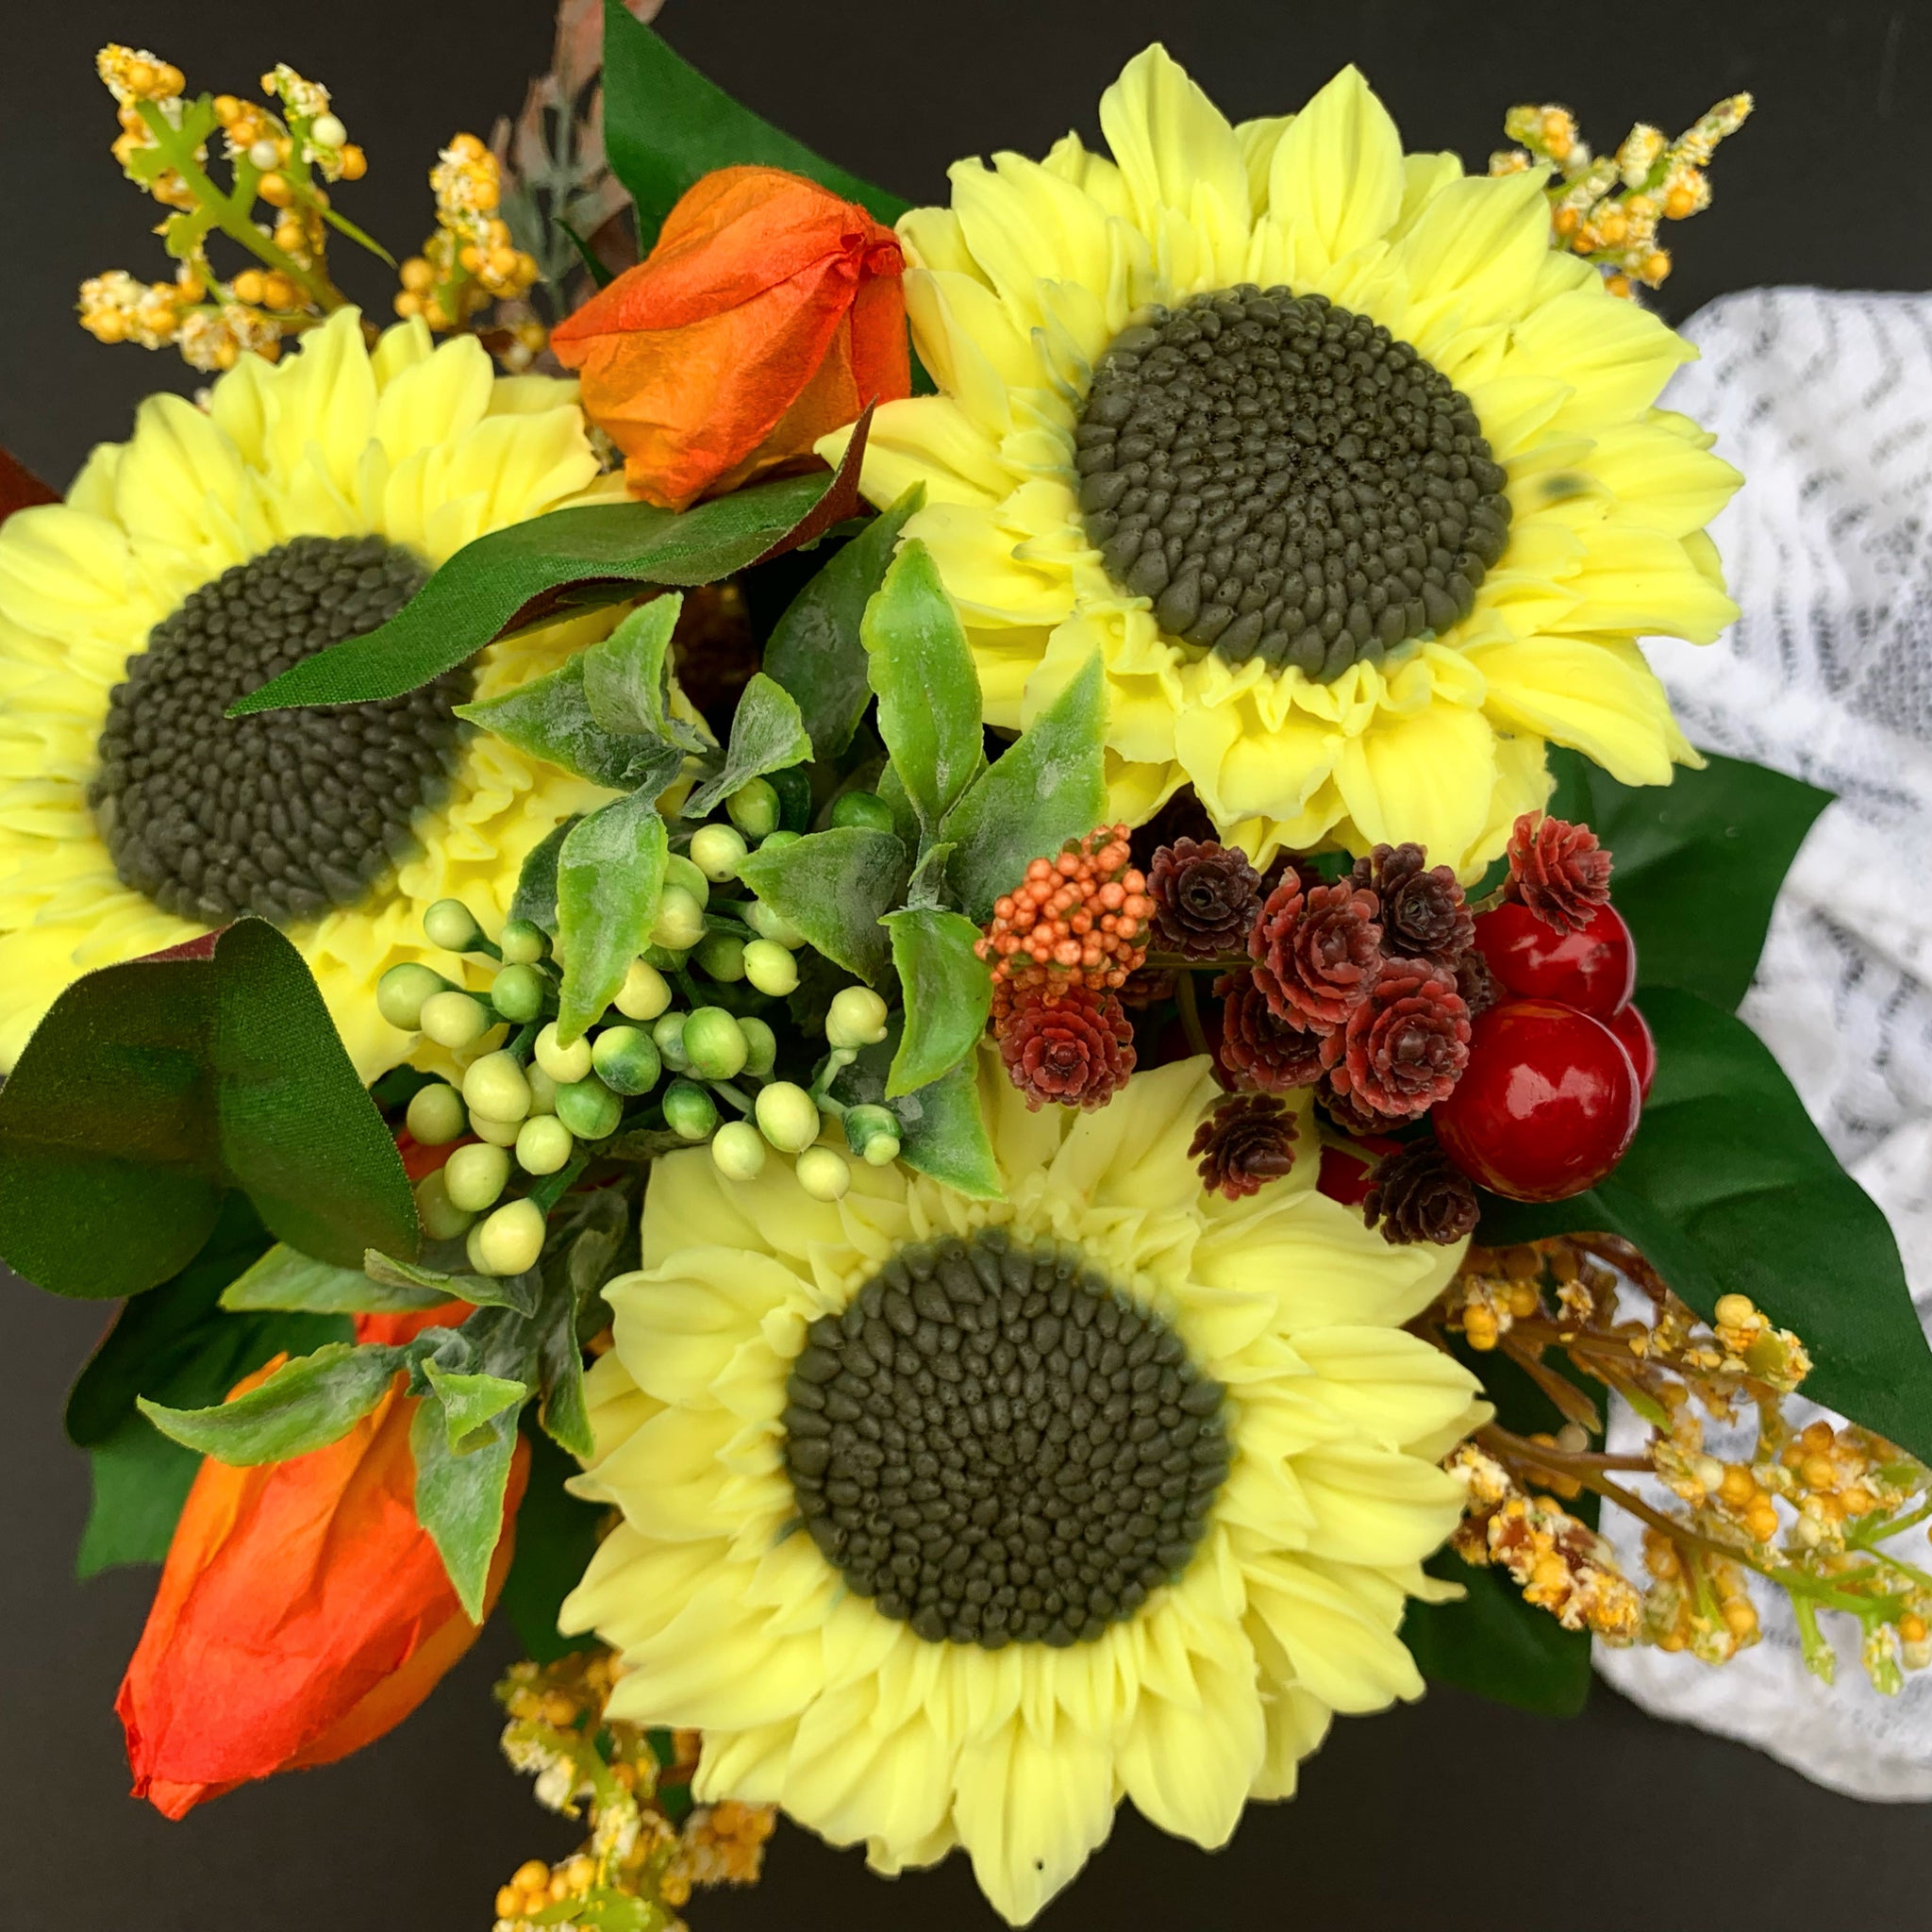 Sunflower happiness soap bouquet, Autumn flowers arrangement, Sunneflower bouquet